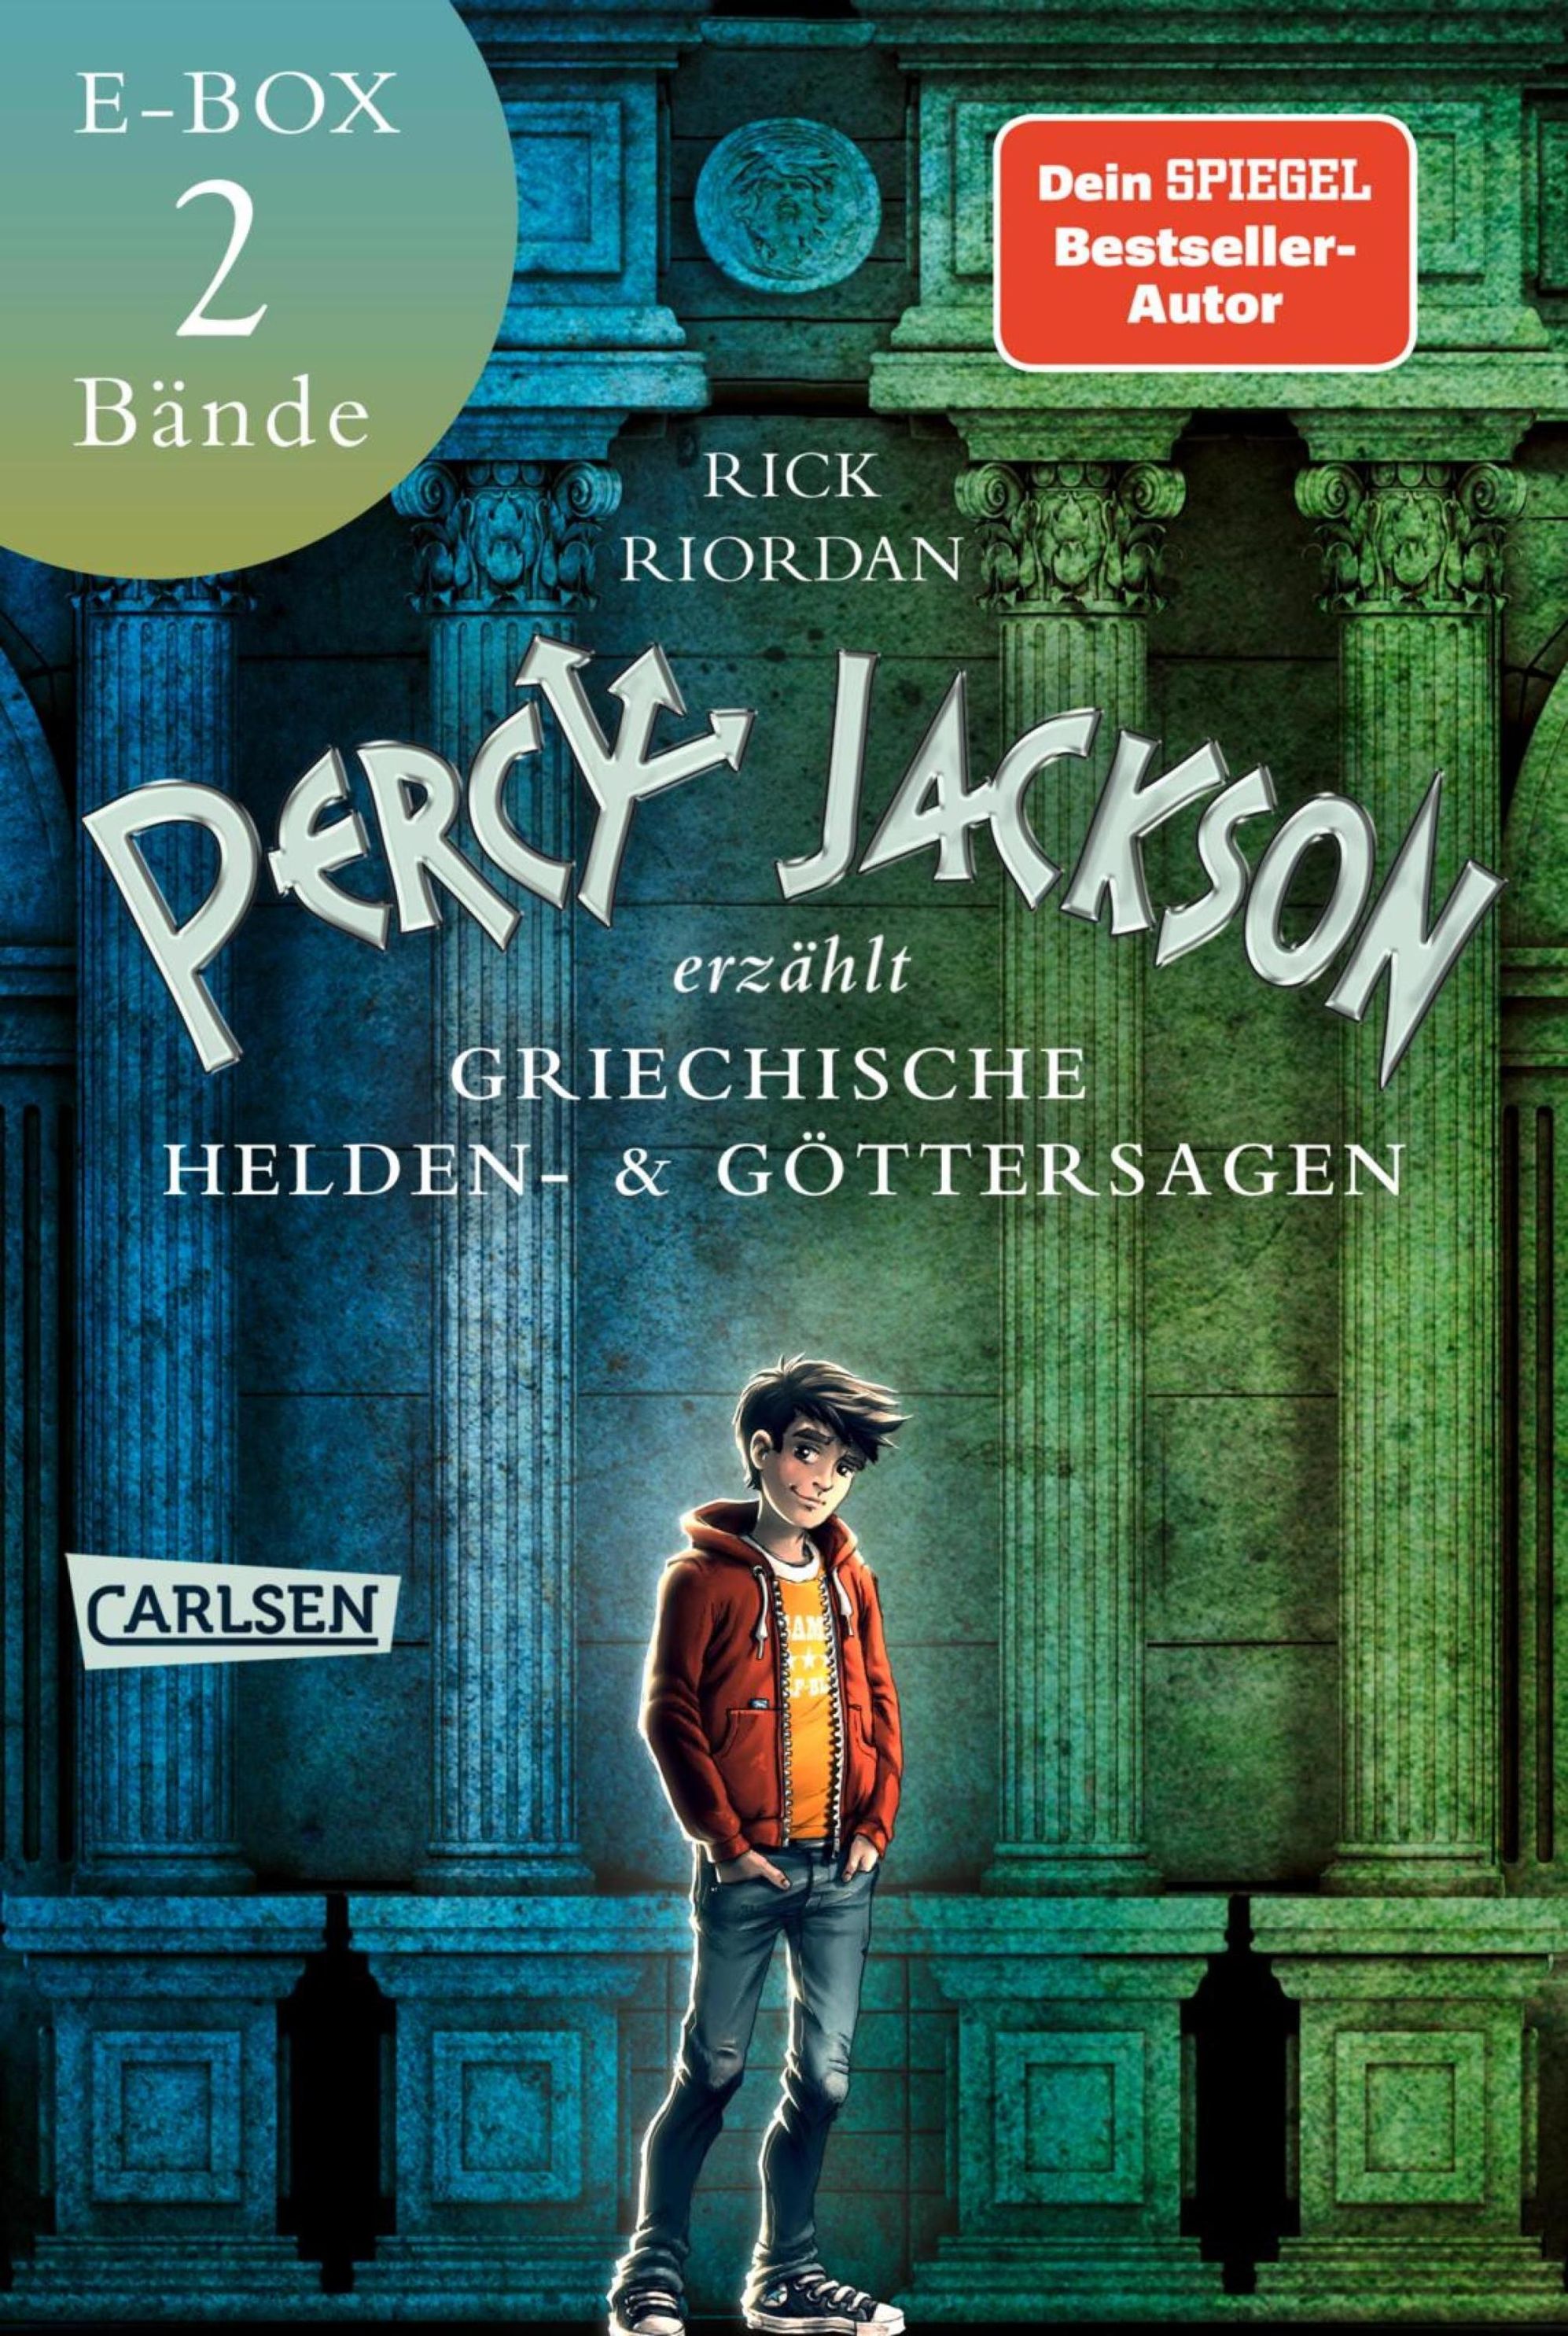 Percy Jackson erzählt: Band 1+2 der sagenhaften Abenteuer-Serie in einer  E-Box! Percy Jackson erzählt eBook v. Rick Riordan | Weltbild